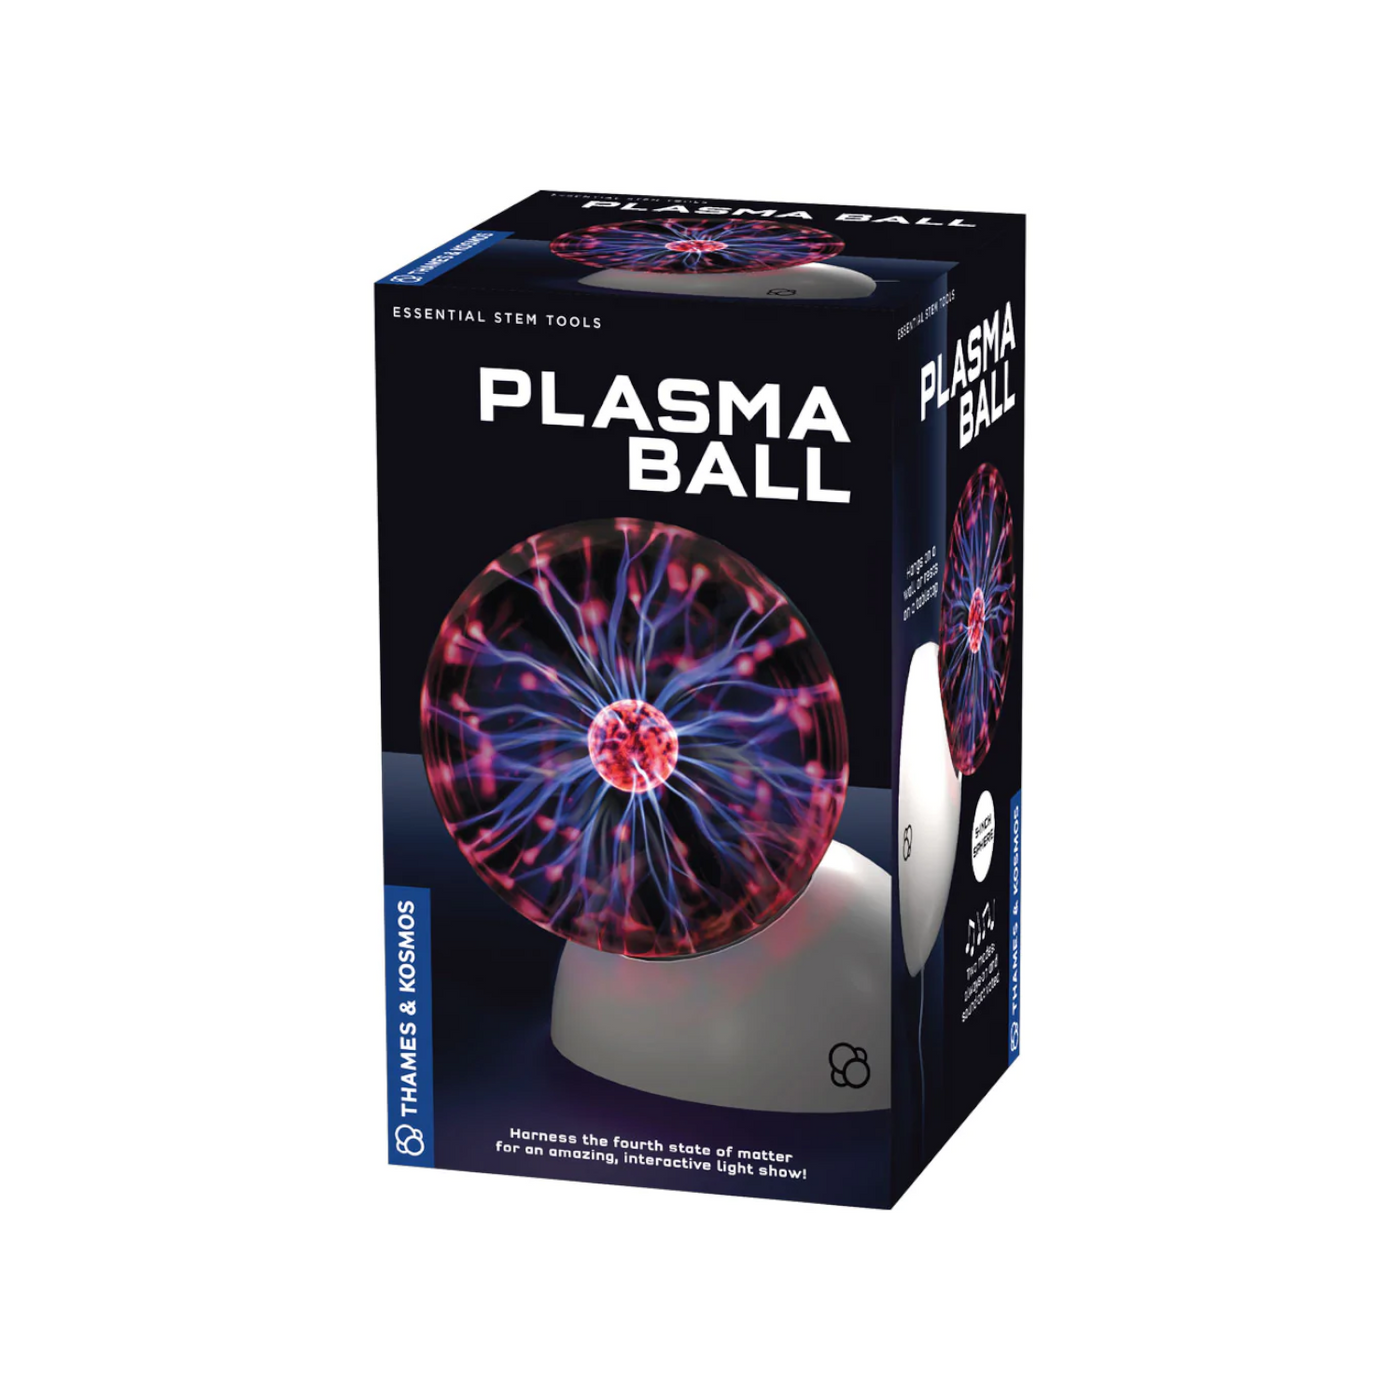 Plasma Globe Experiment Kit